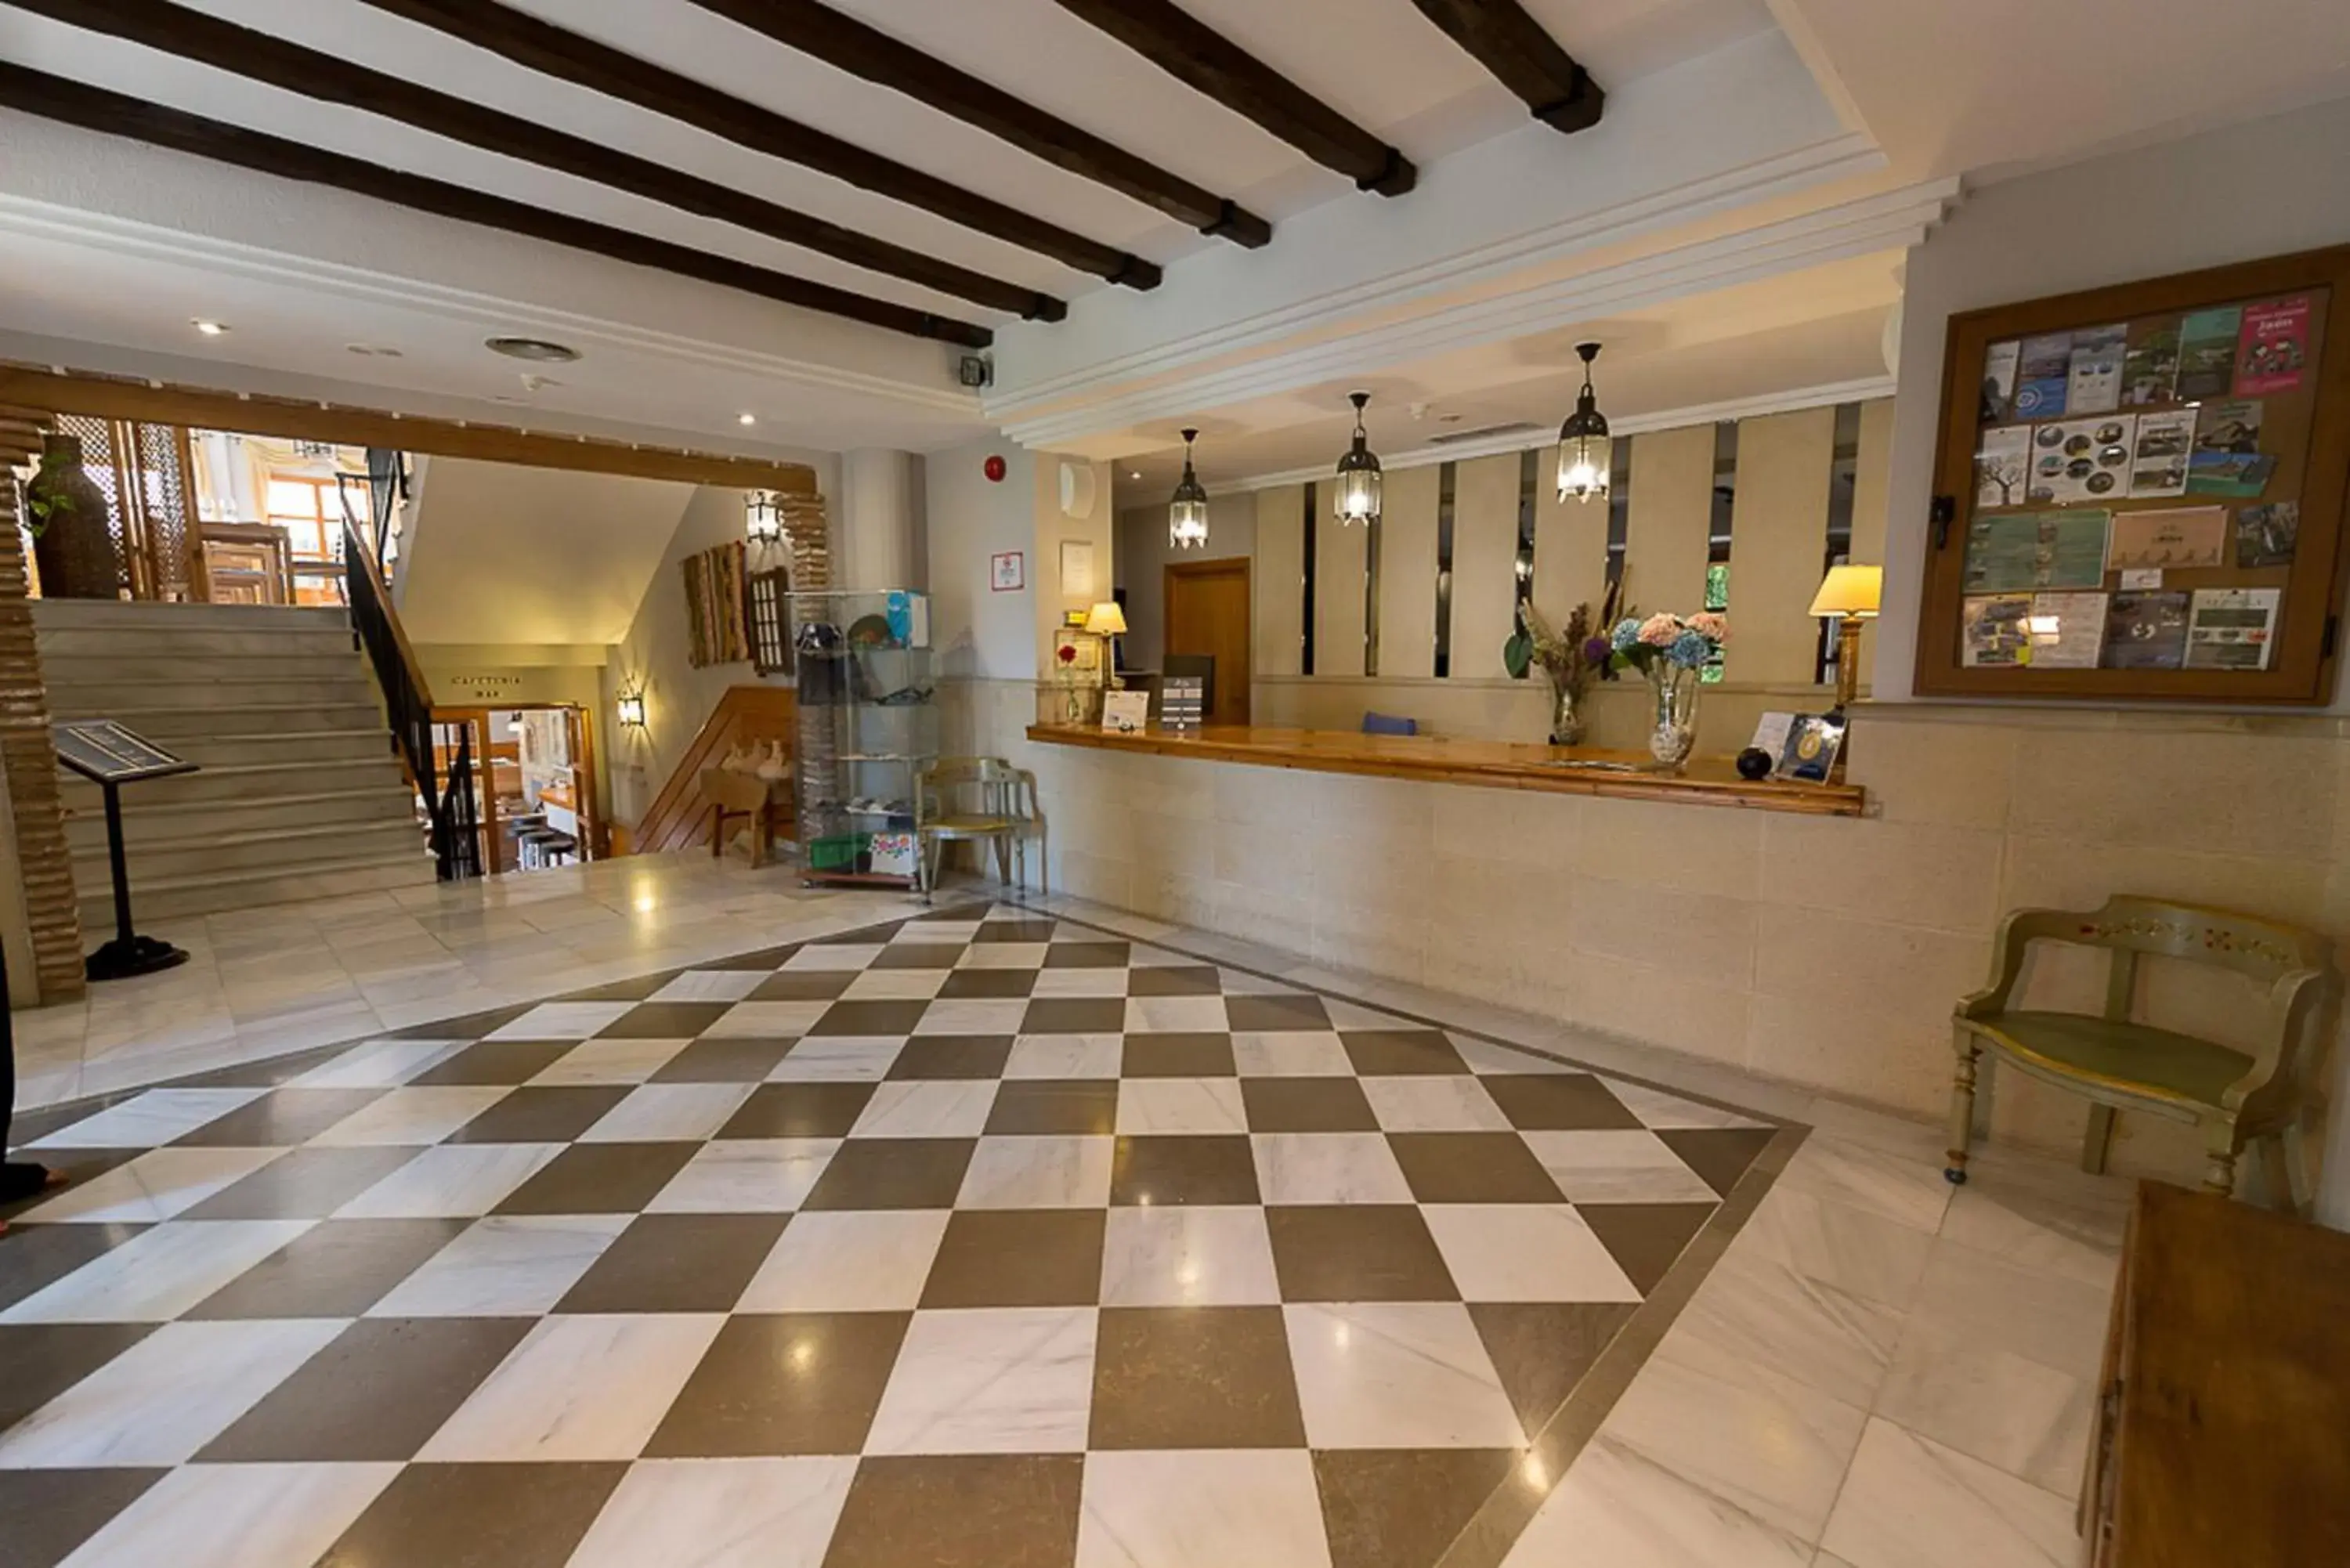 Lobby or reception, Lobby/Reception in Villa Turistica de Cazorla